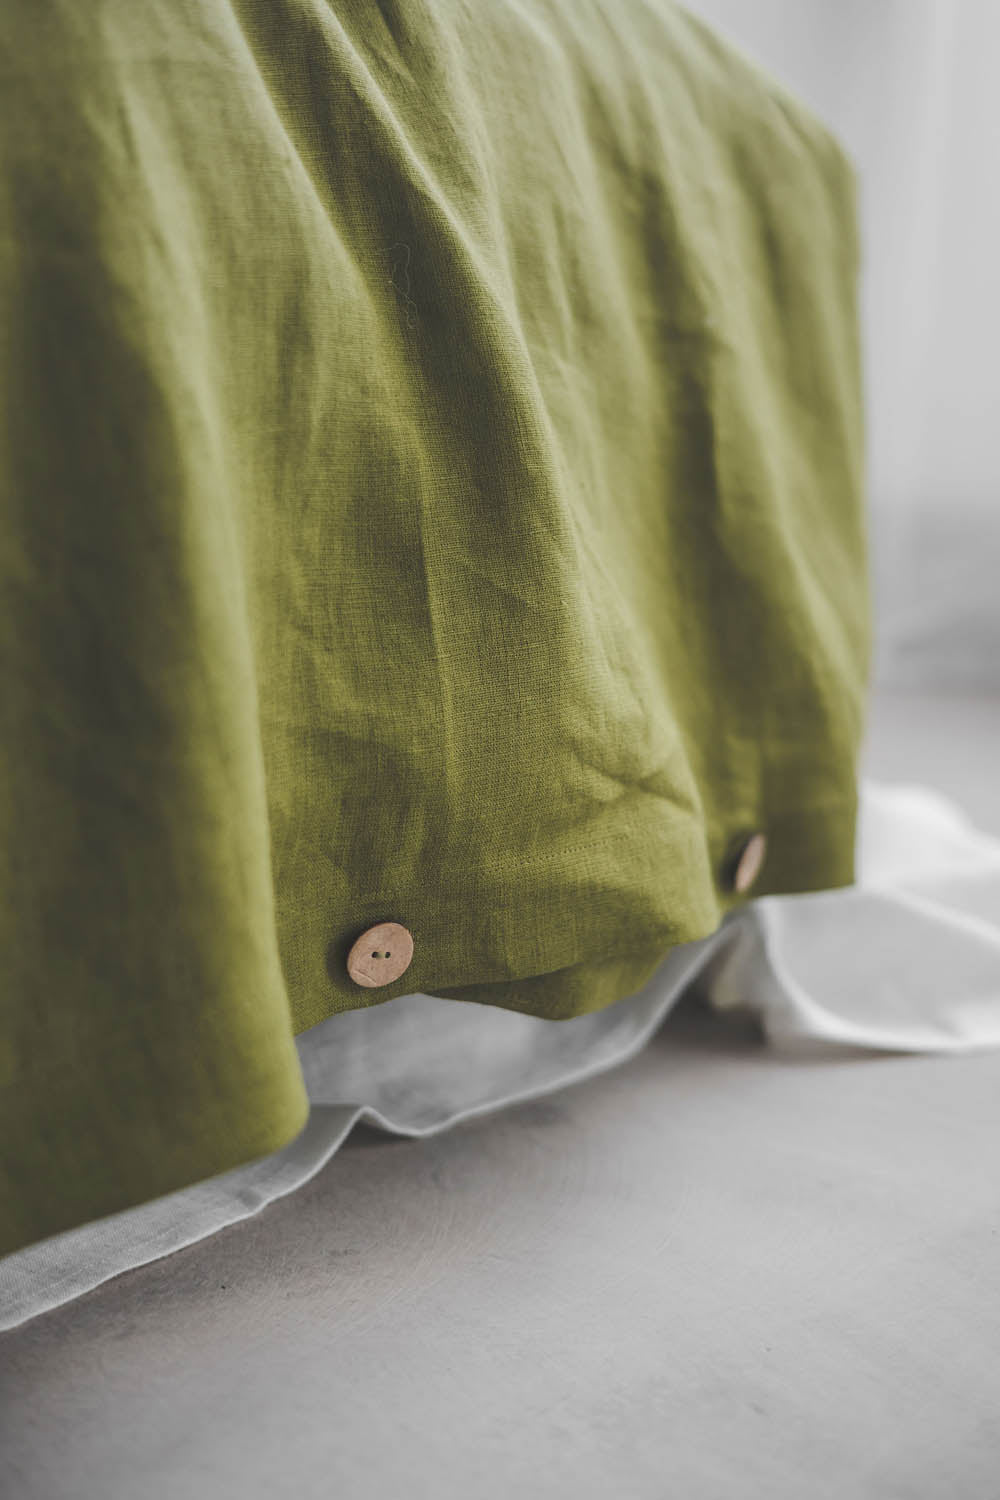 Moss green linen duvet cover with buttons